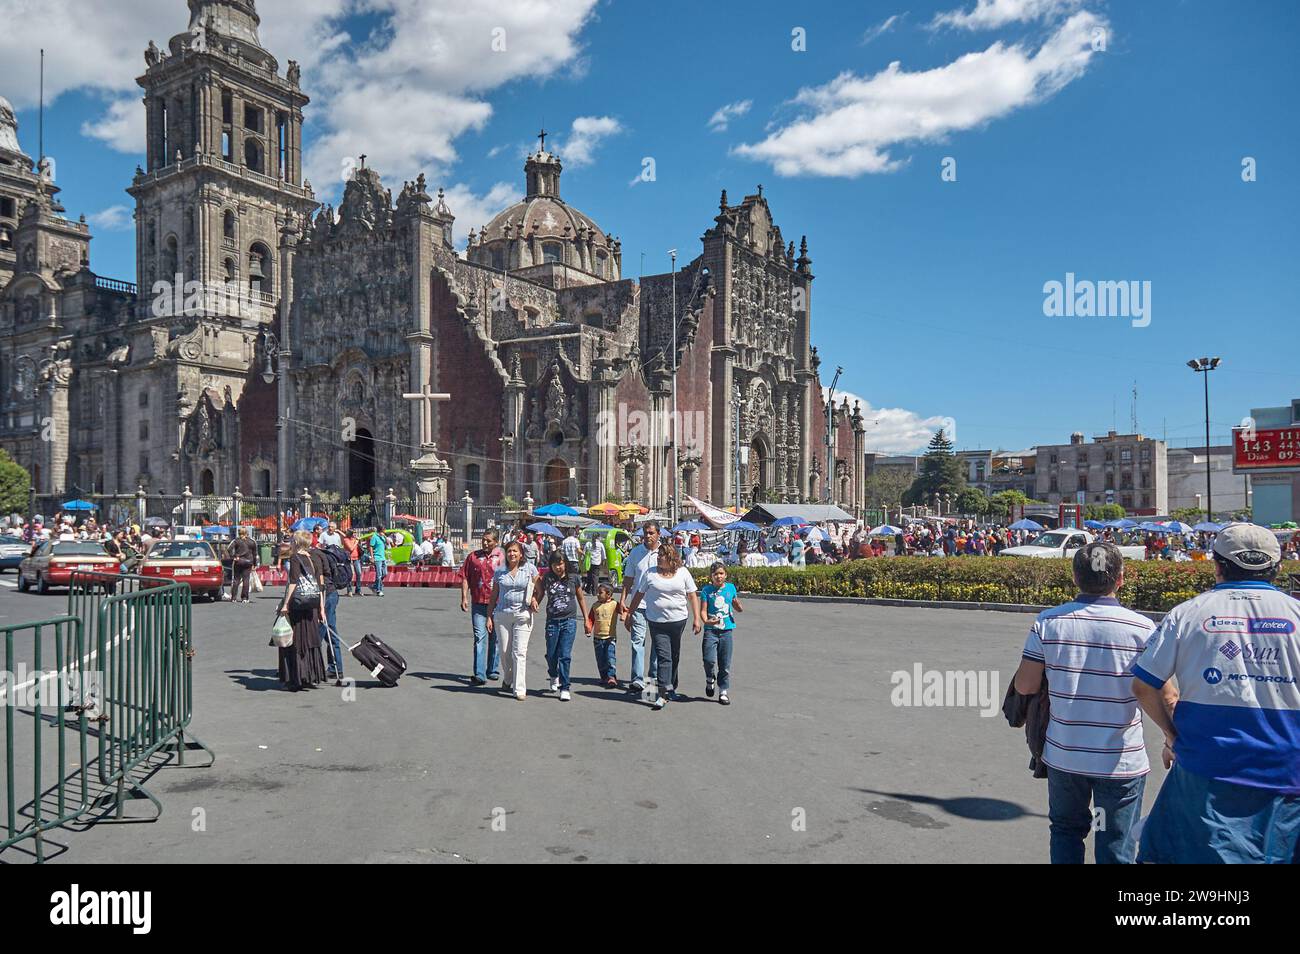 La Plaza de la Constitución, conocida informalmente como el Zócalo, es la plaza principal de la Ciudad de México (Antes llamada Distrito Federal). Stock Photo